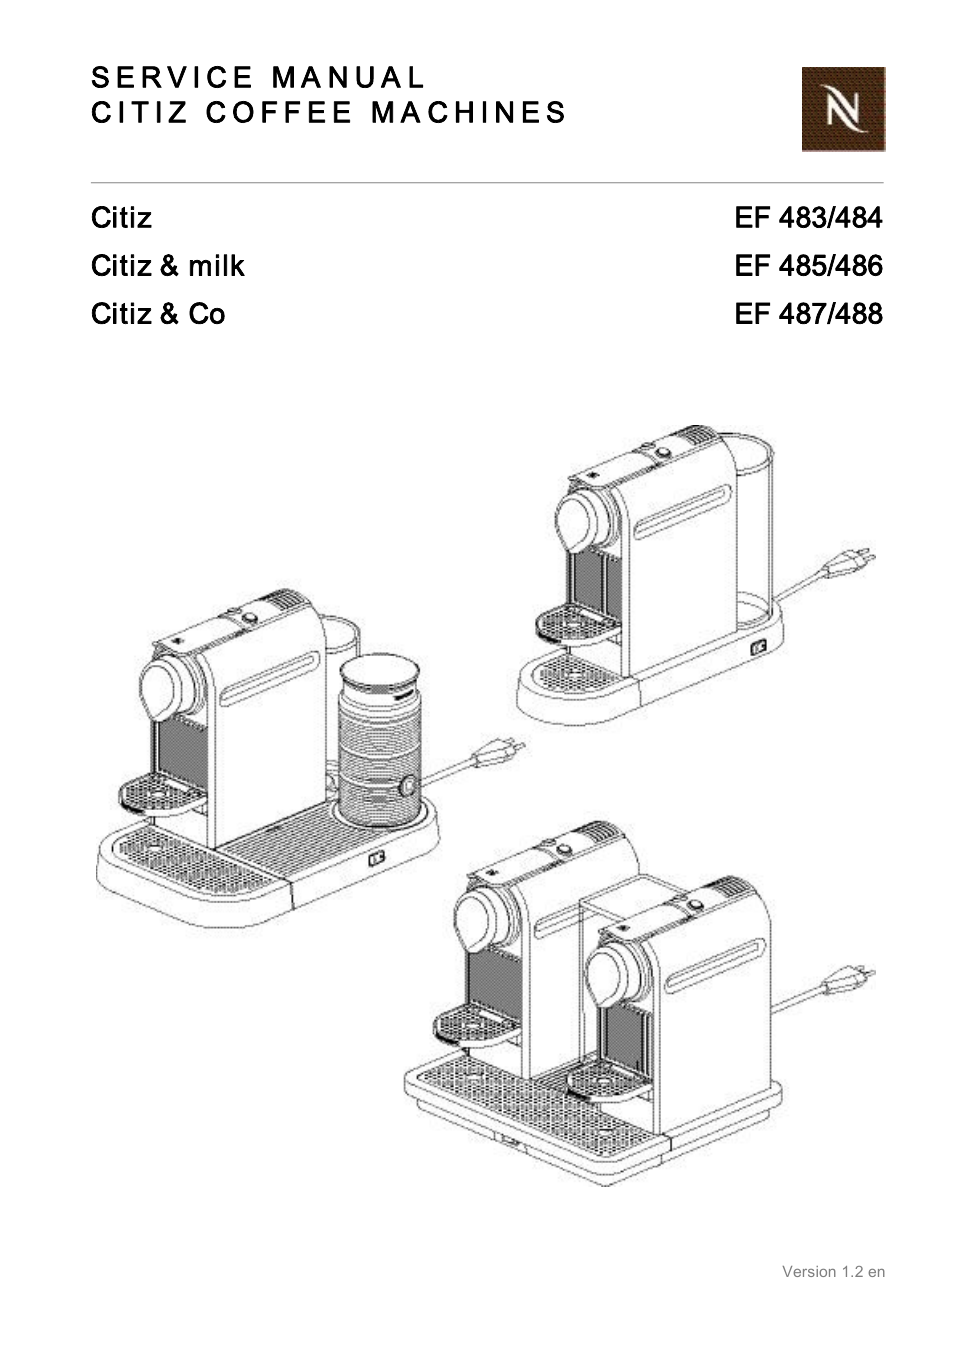 Korridor ødemark Korrupt Nespresso Citiz & Co EF 488 User Manual | 158 pages | Also for: Citiz & Co  EF 487, Citiz & milk EF 486, Citiz & milk EF 485, CITIZ EF 484, CITIZ EF 483